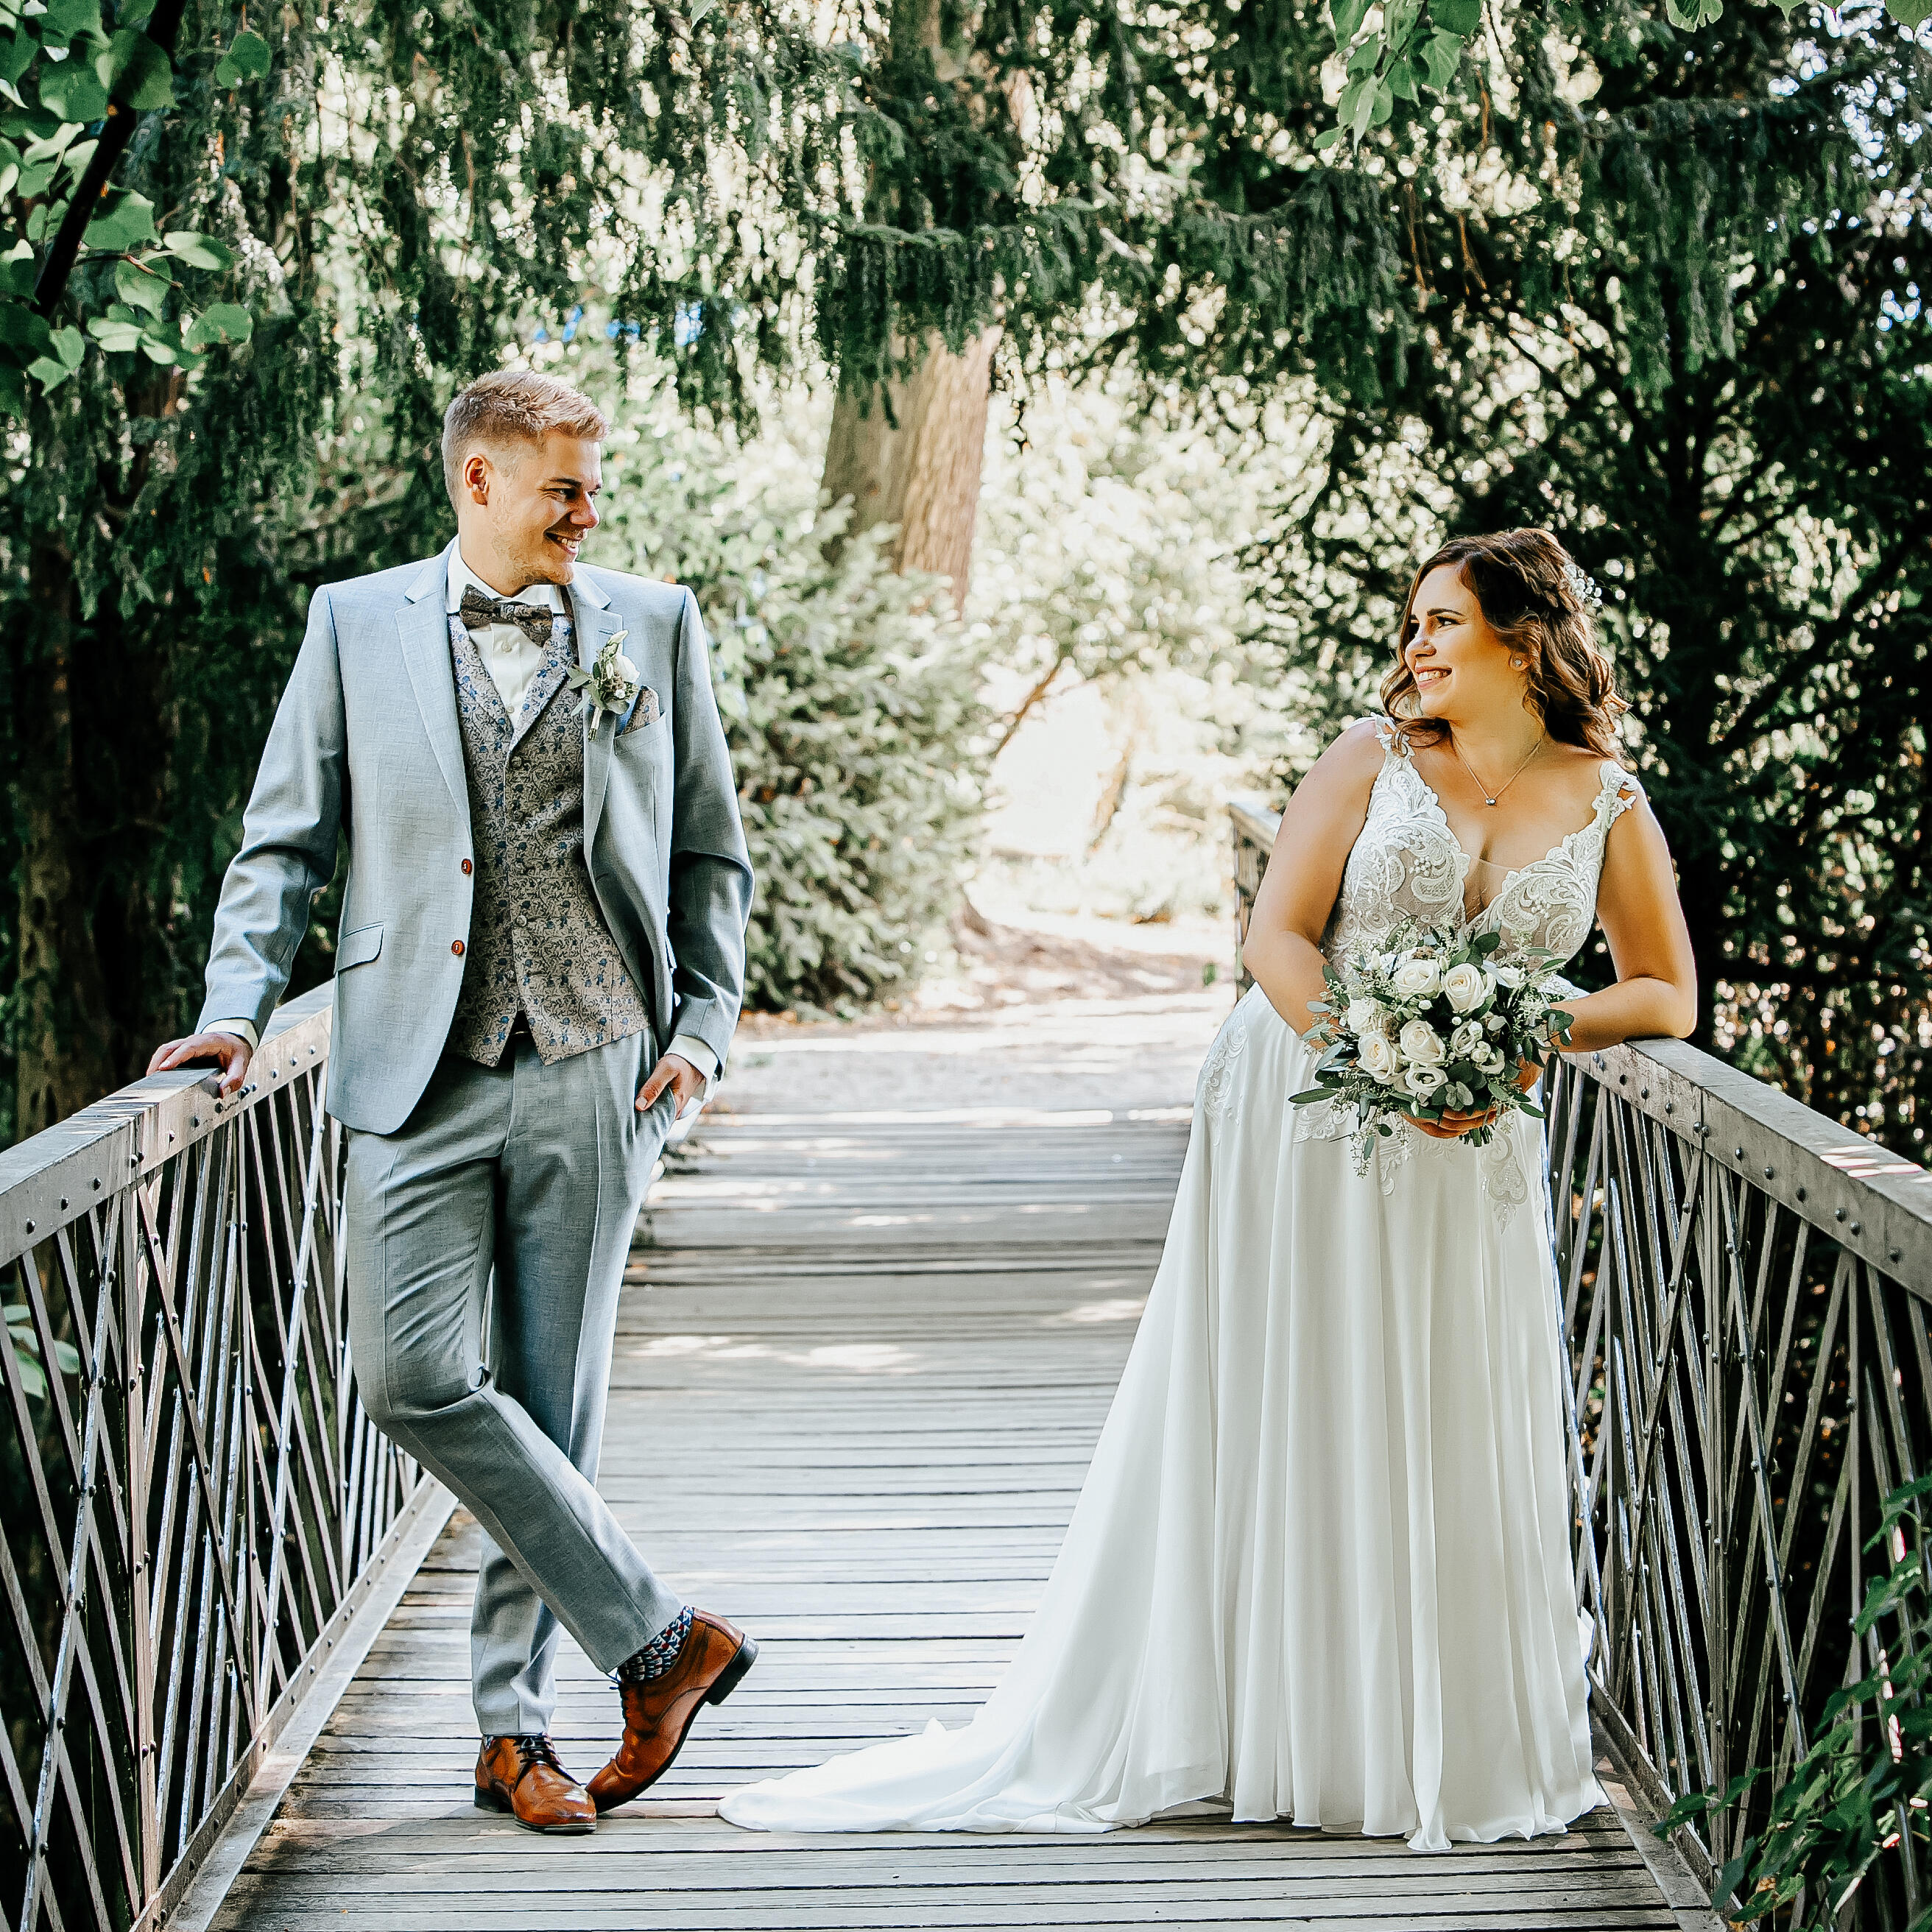 Brautpaar auf einer Brücke schaut sich gegenseitig an